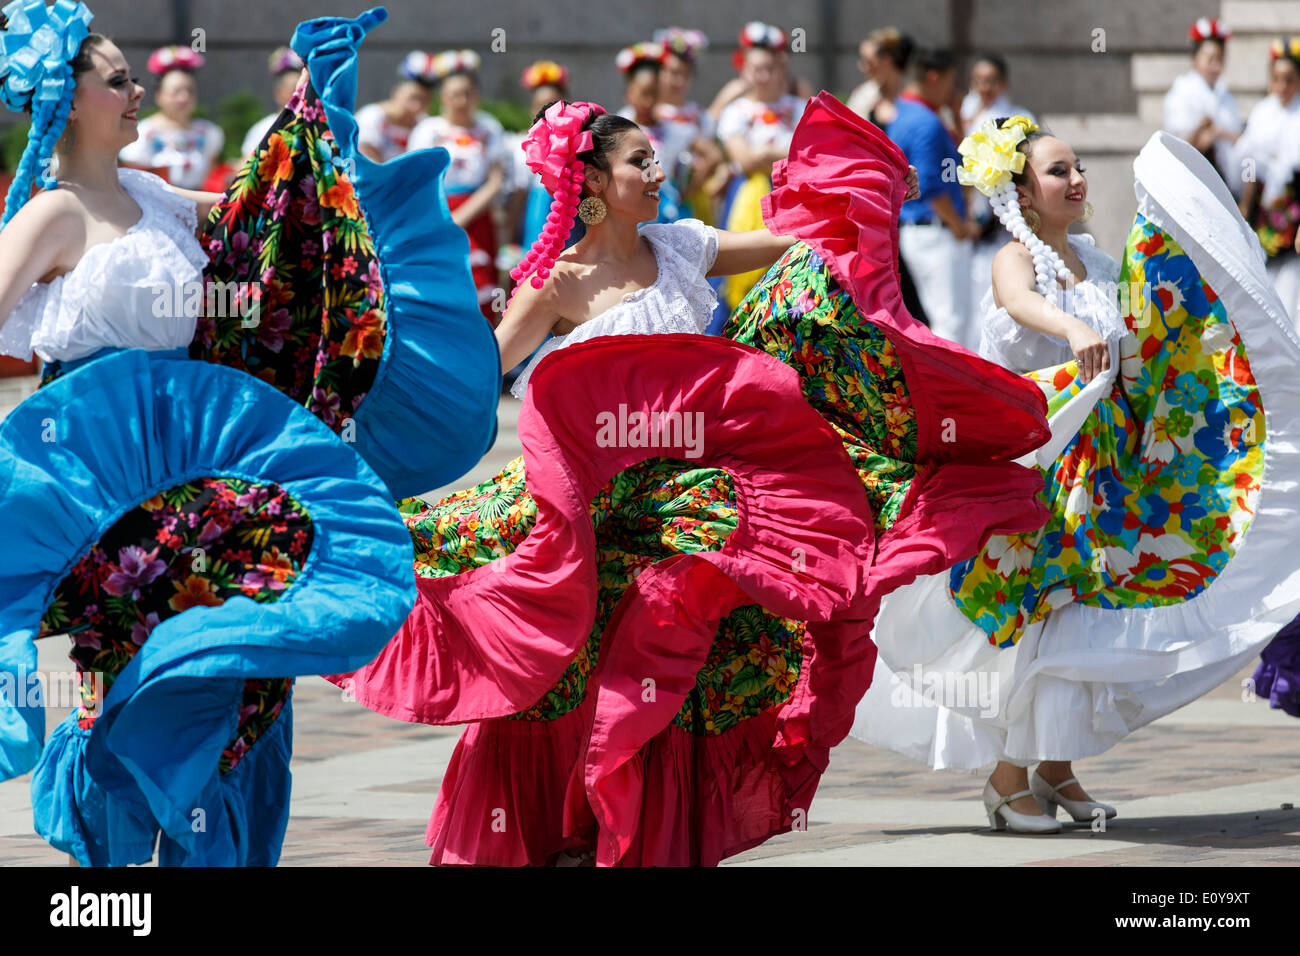 Mexican dancers, Cinco de Mayo Celebration, Civic Center Park, Denver, Colorado USA Stock Photo